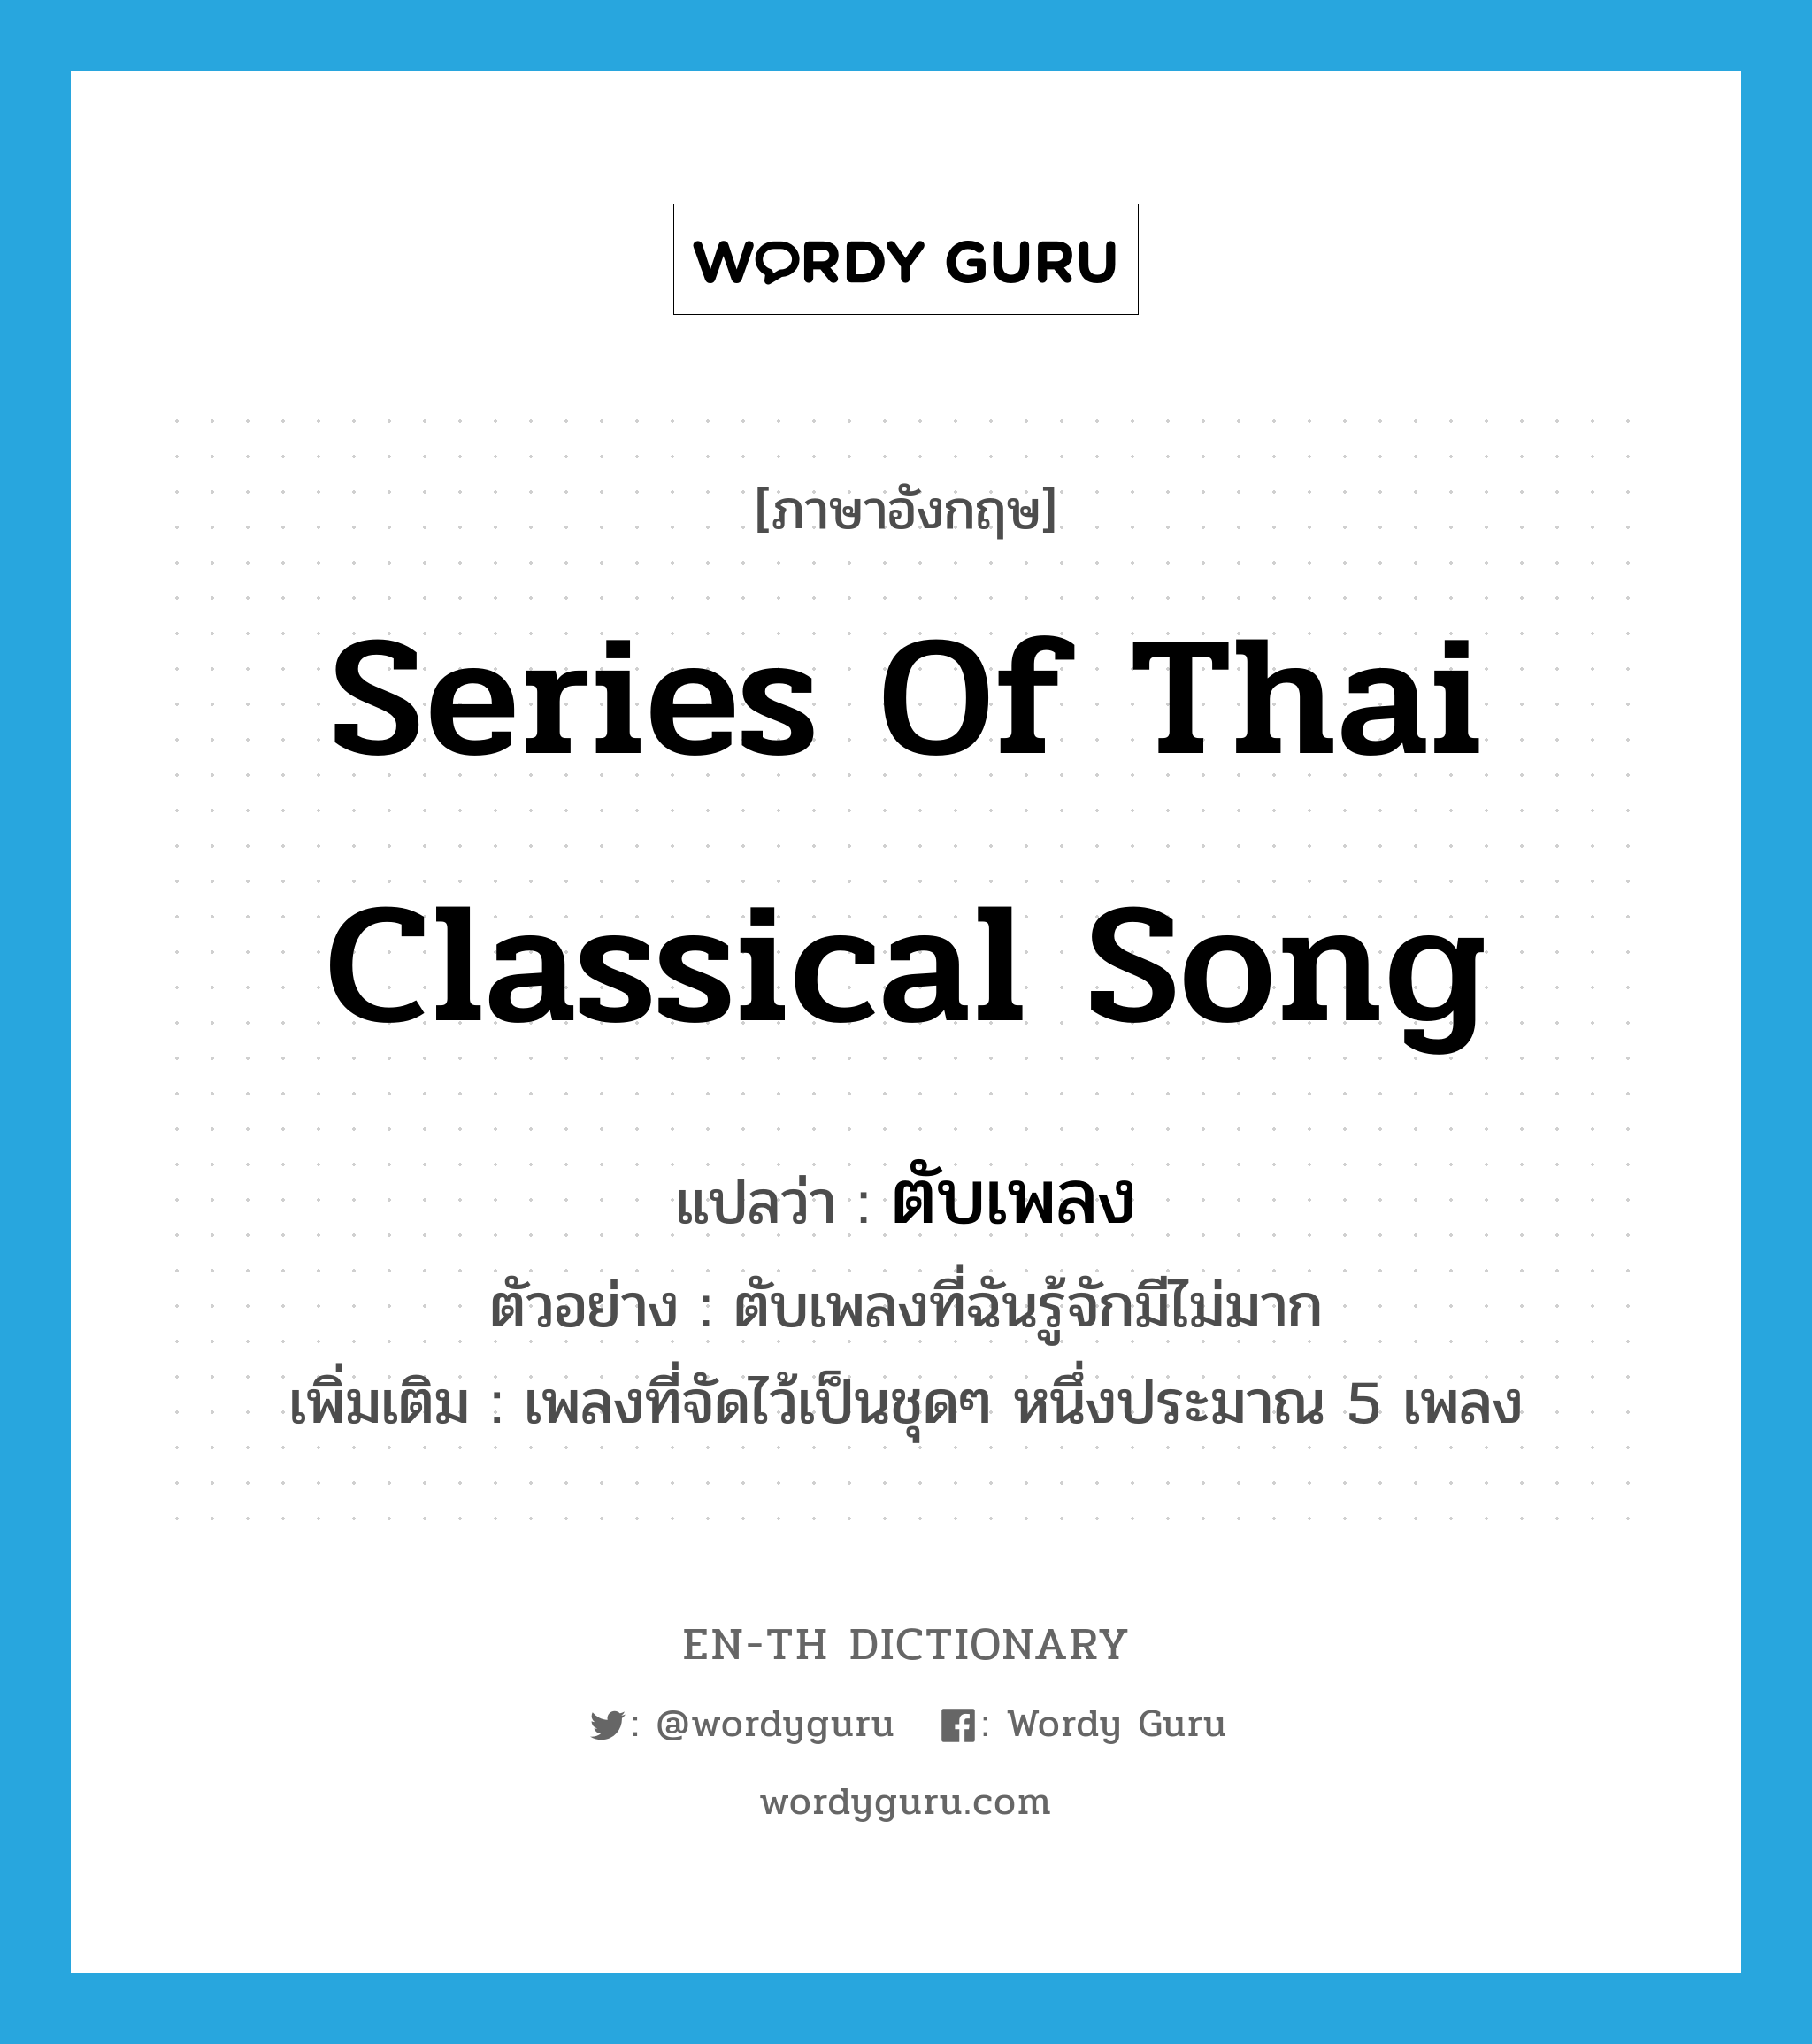 series of Thai classical song แปลว่า?, คำศัพท์ภาษาอังกฤษ series of Thai classical song แปลว่า ตับเพลง ประเภท N ตัวอย่าง ตับเพลงที่ฉันรู้จักมีไม่มาก เพิ่มเติม เพลงที่จัดไว้เป็นชุดๆ หนึ่งประมาณ 5 เพลง หมวด N